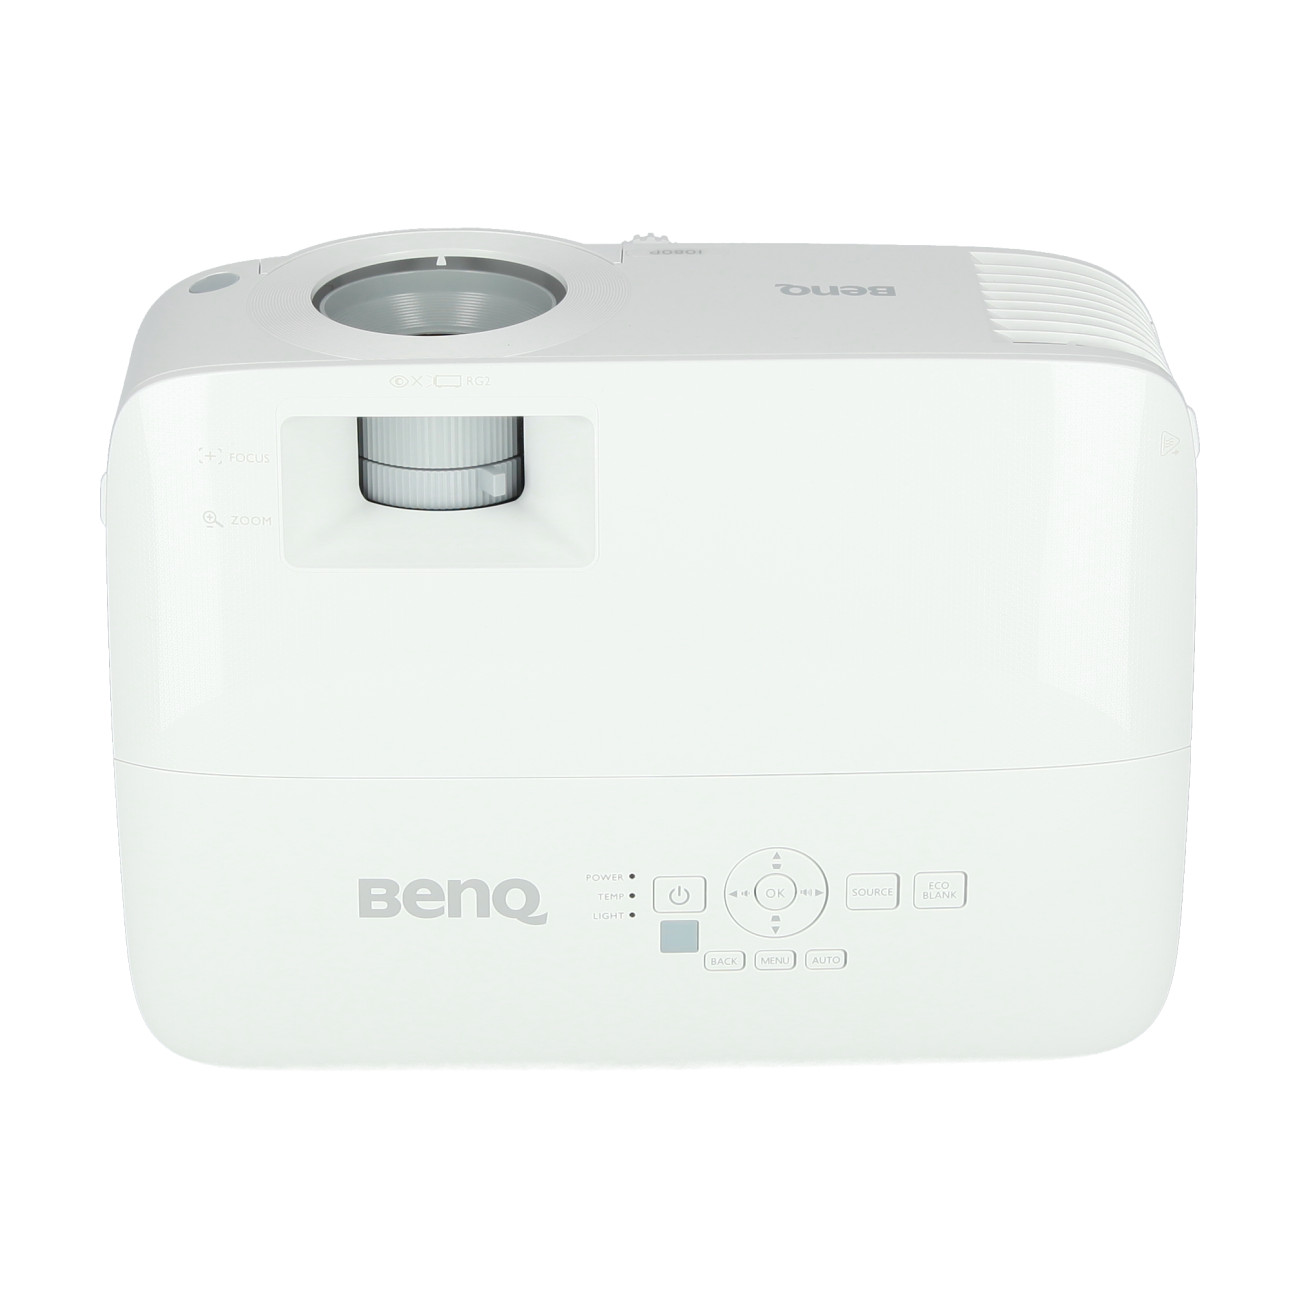 Benq-MH560-Beamer-1920-x-1080-Full-HD-3-800-ANSI-Lumen-Demo